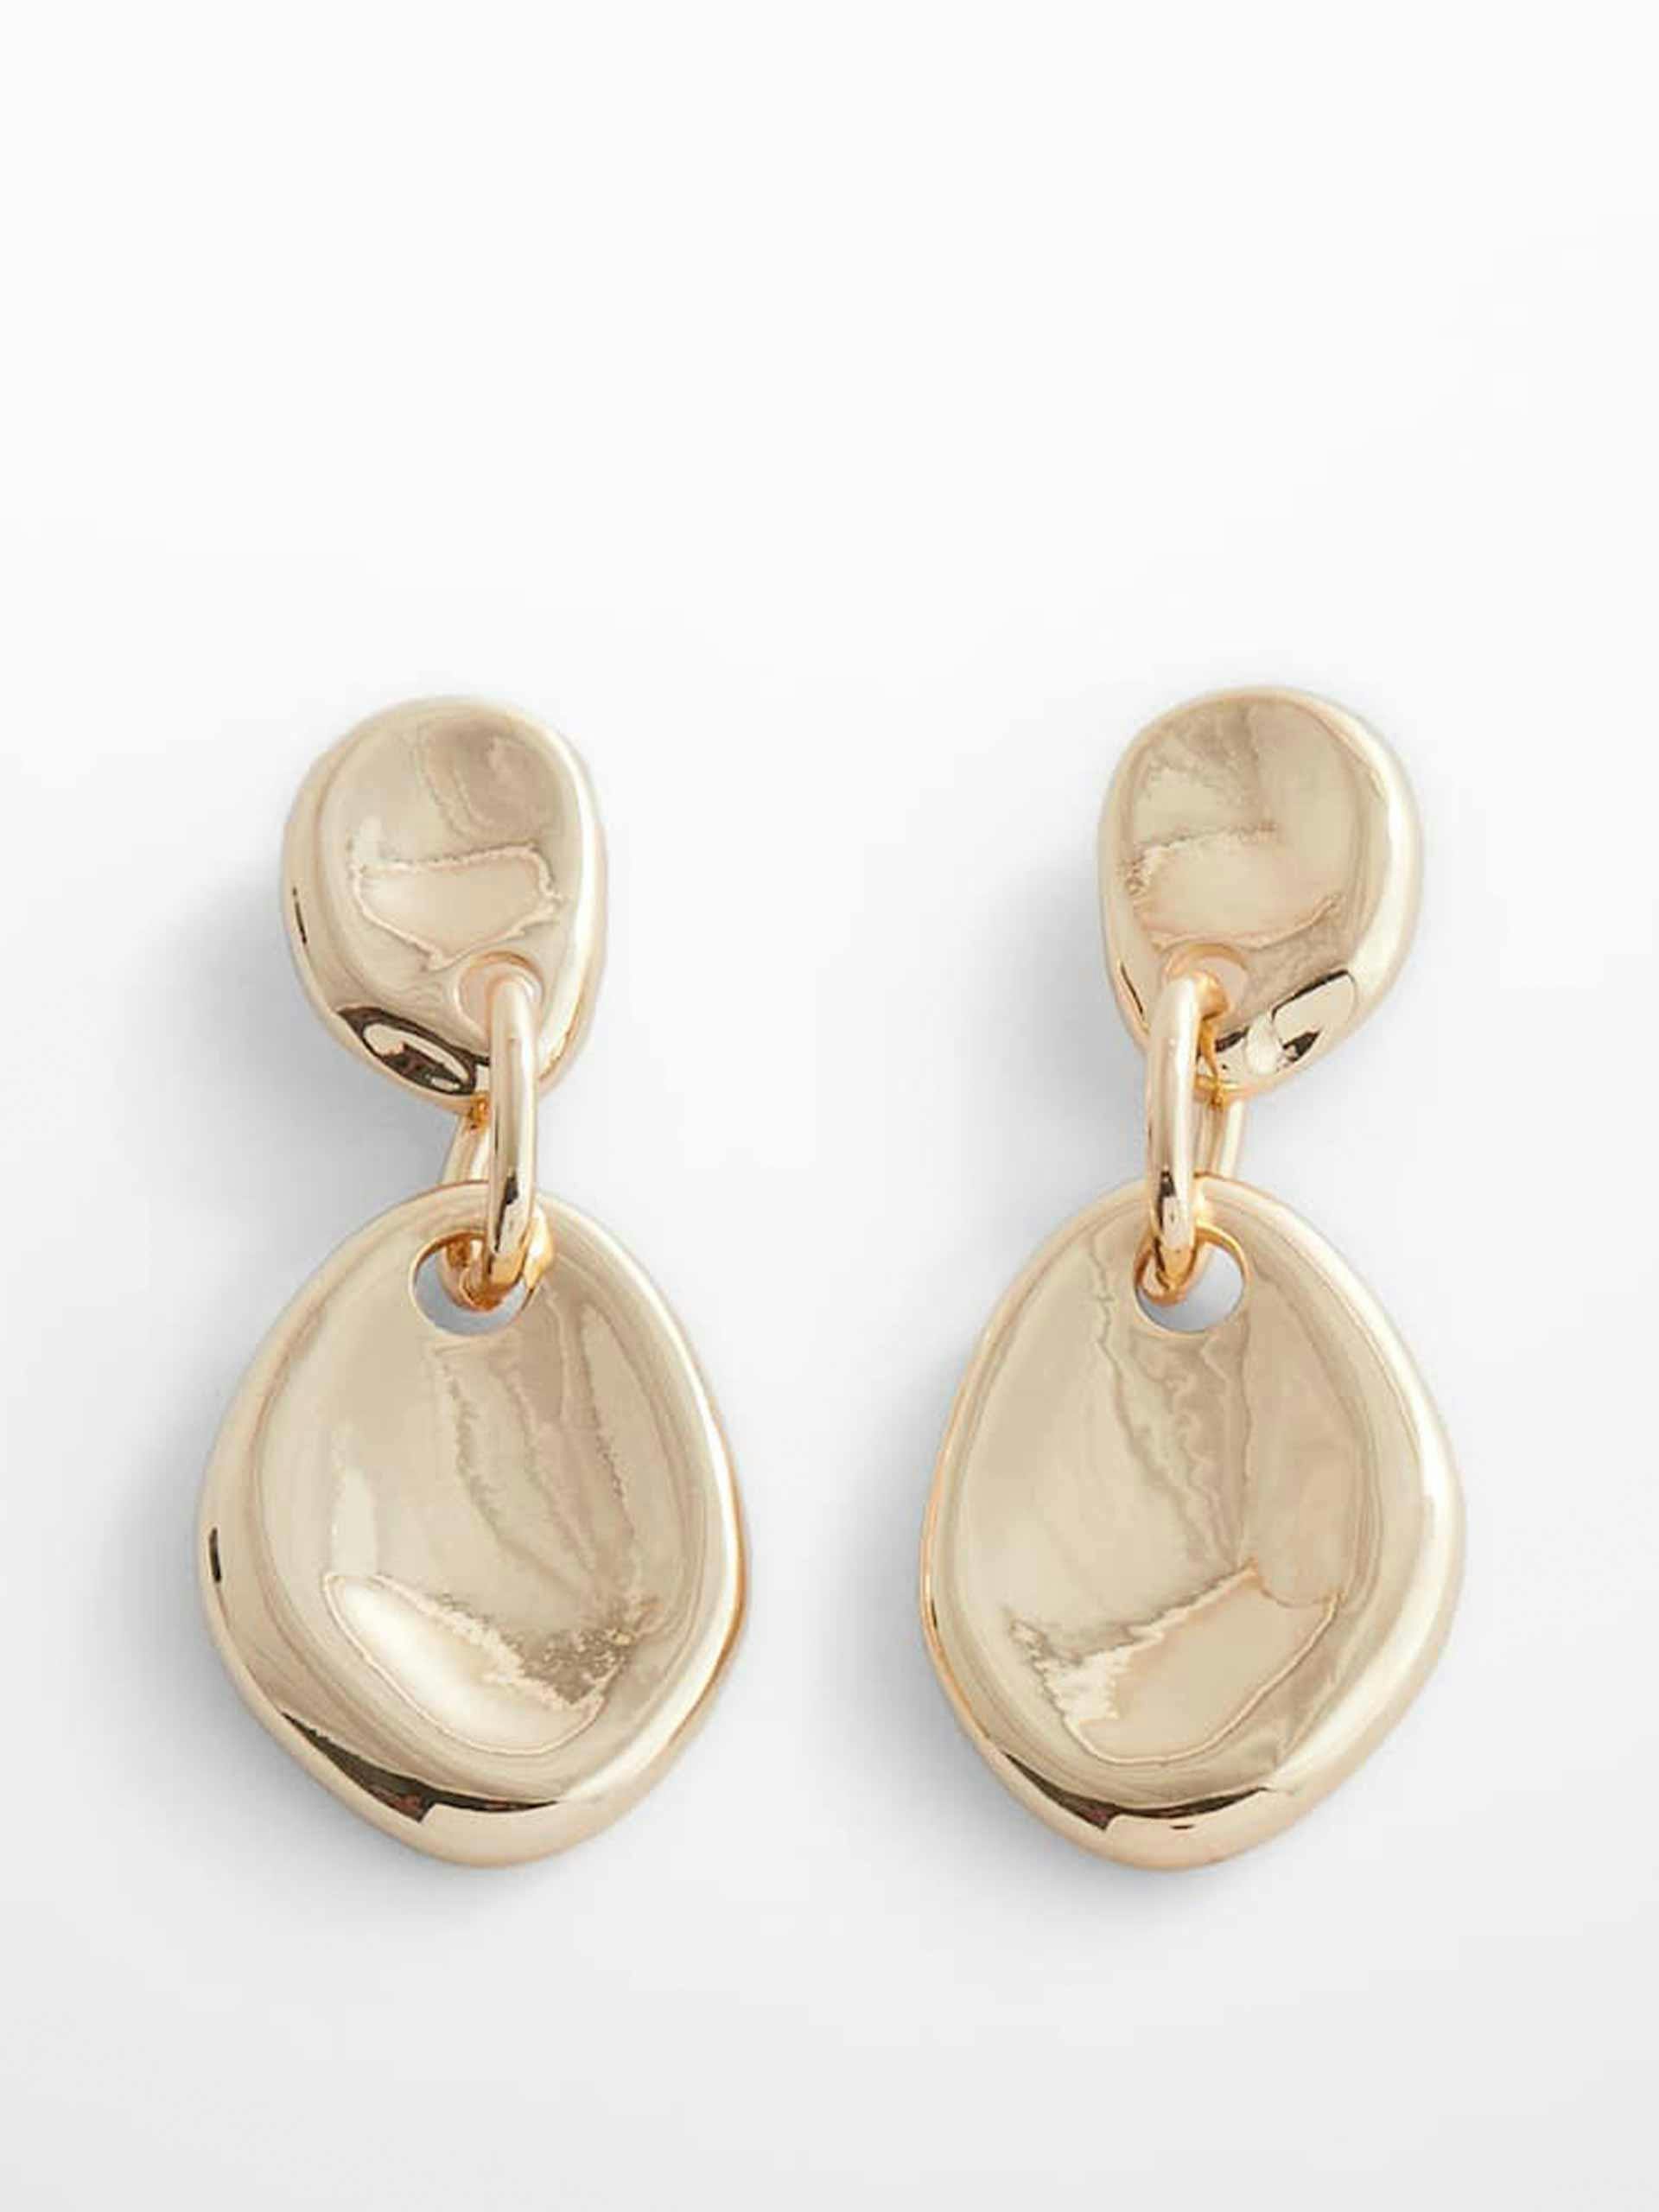 Metal pendant earrings